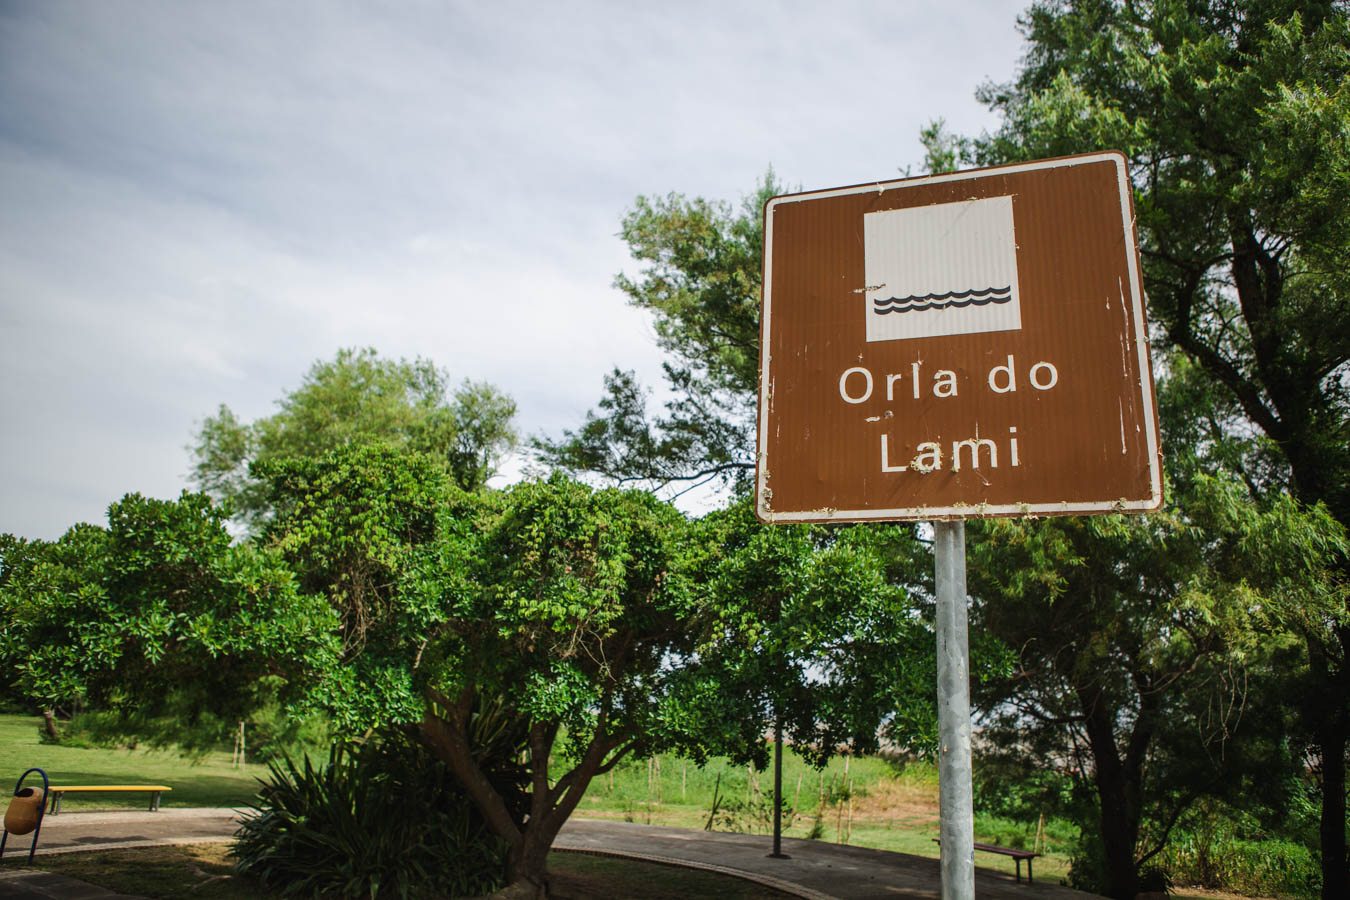 Lotações para o bairro lami : Petição Pública Brasil